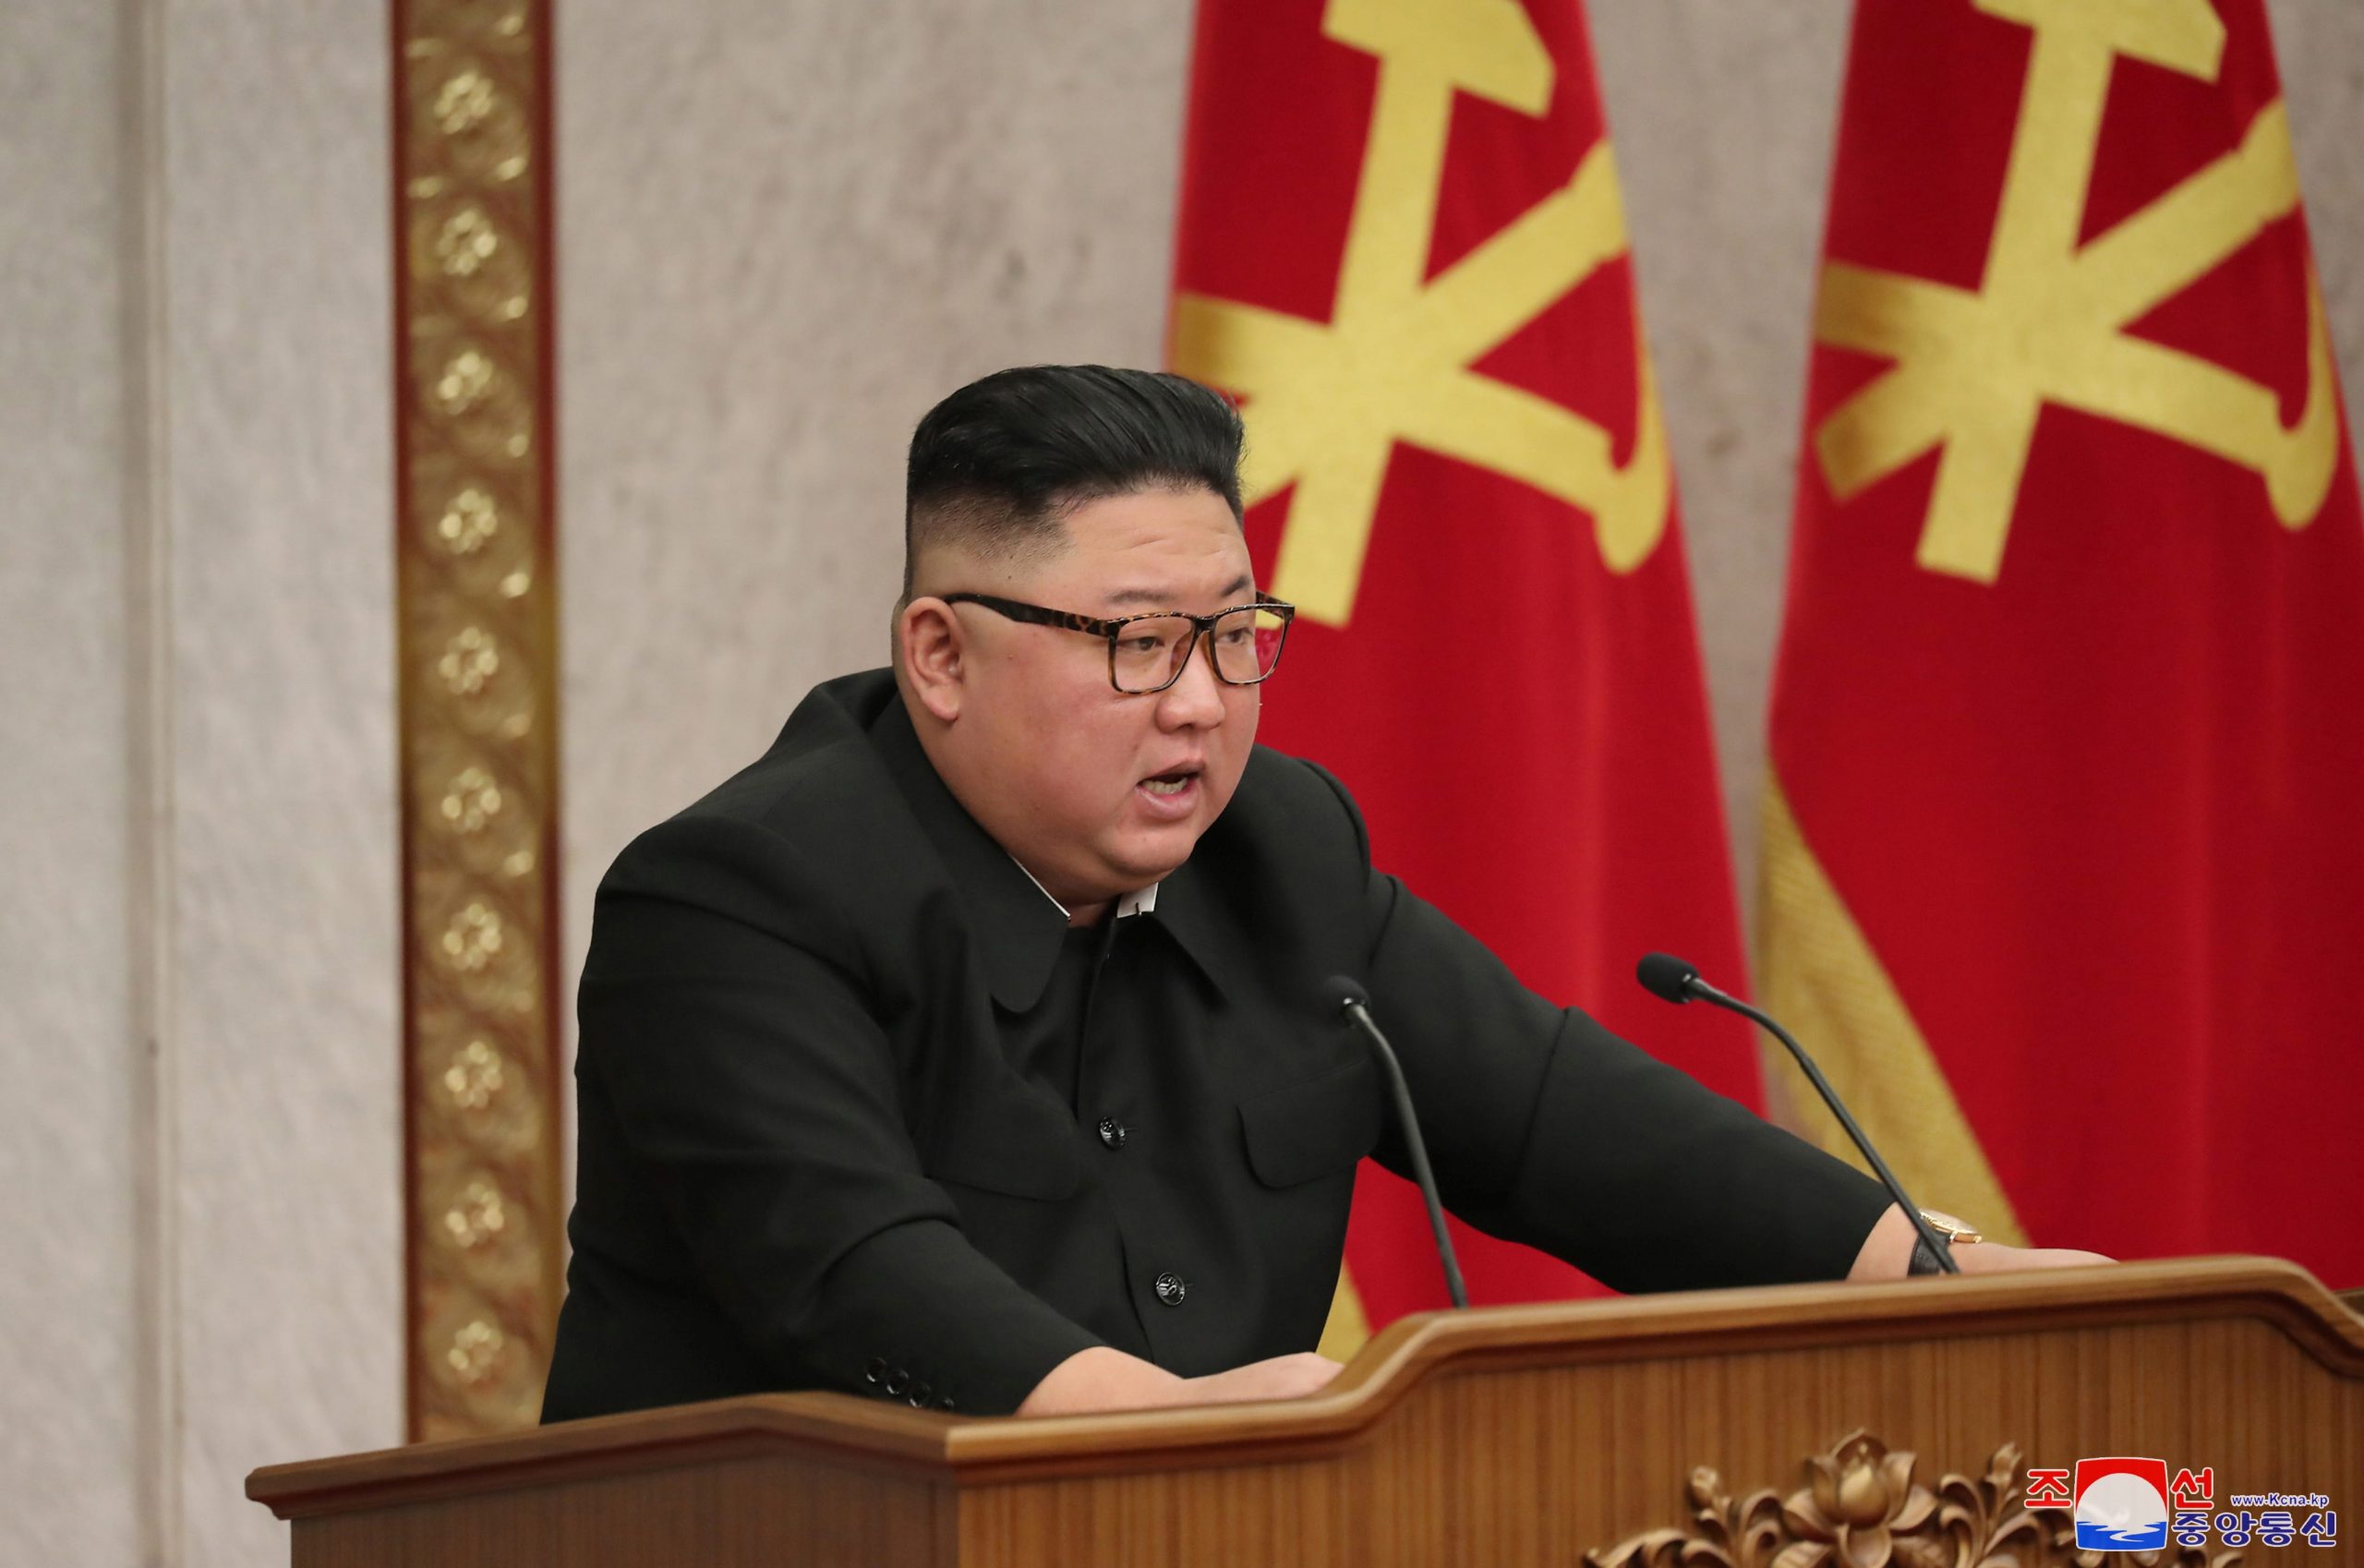 Kim Jong Un Speech